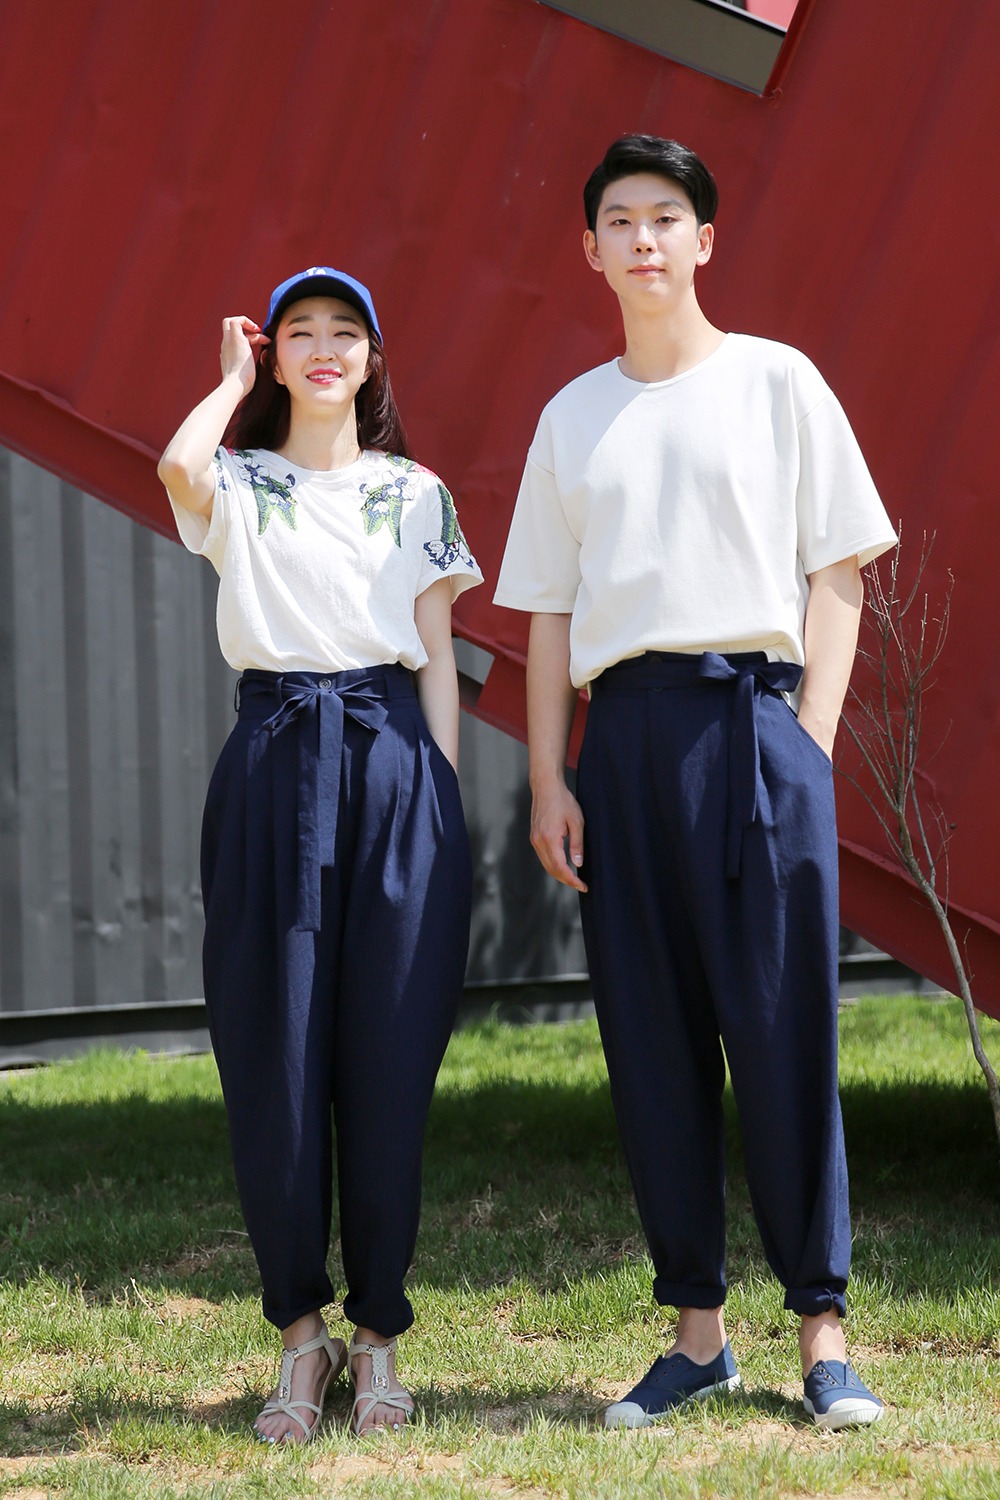 Joseon Pants Light [Navy]